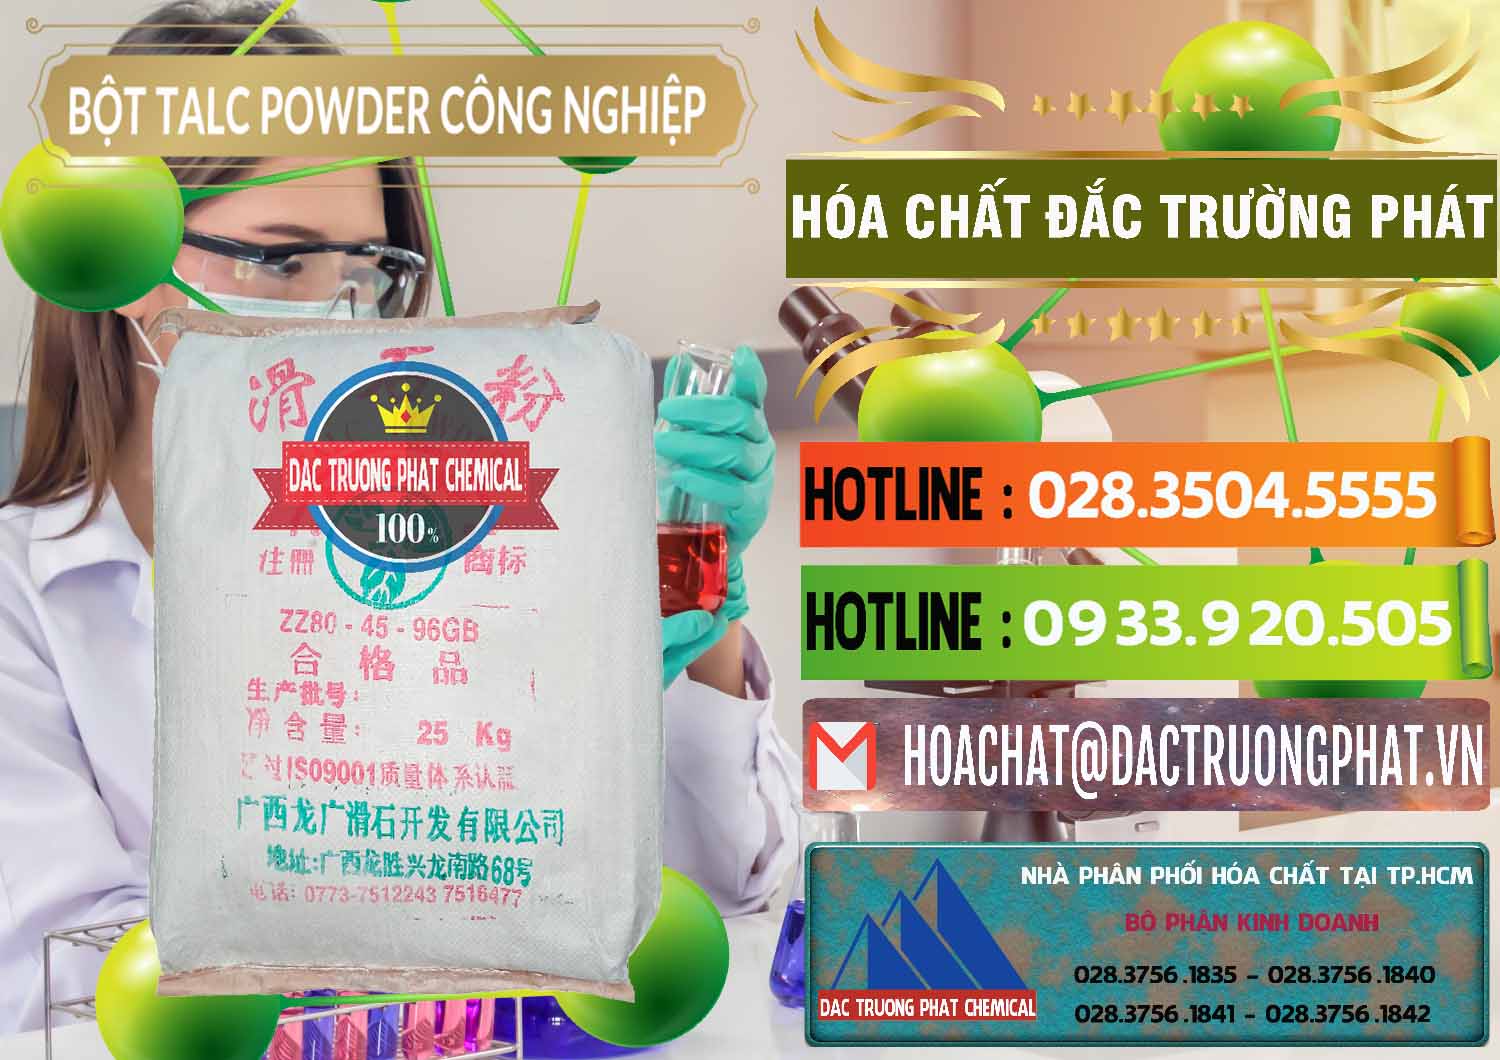 Công ty cung cấp & bán Bột Talc Powder Công Nghiệp Trung Quốc China - 0037 - Nơi cung cấp - phân phối hóa chất tại TP.HCM - cungcaphoachat.com.vn